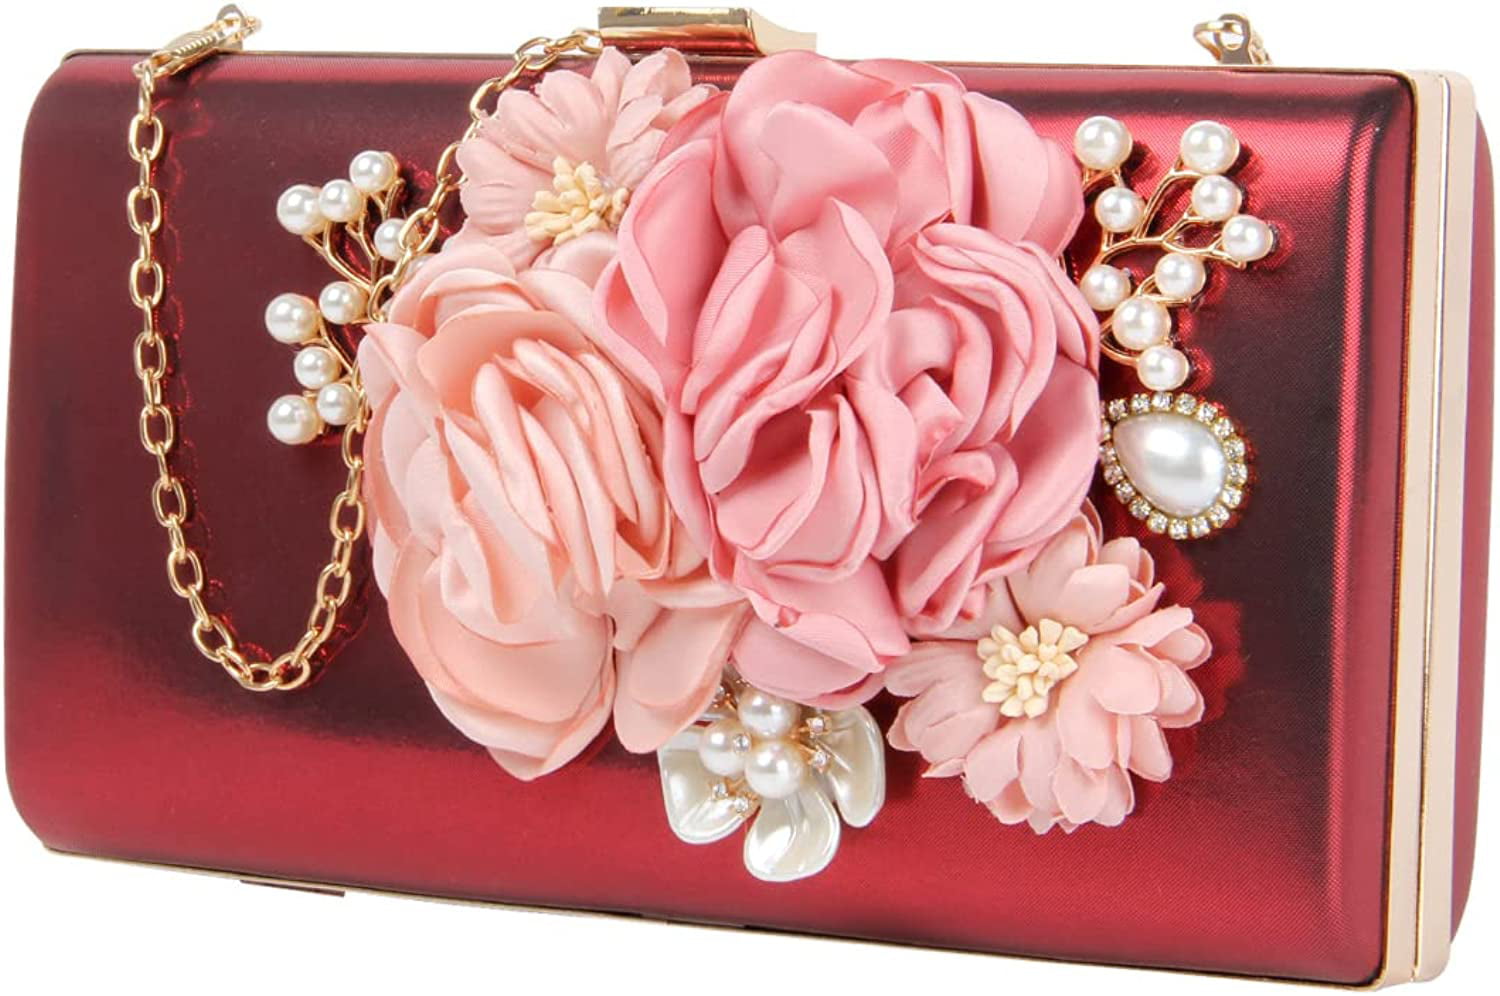 Ynport Women Acrylic Box Purse Elegant Flower Rhinestone Evening Clutch Floral Top Handle Tote Handbag Wedding Shoulder Bag